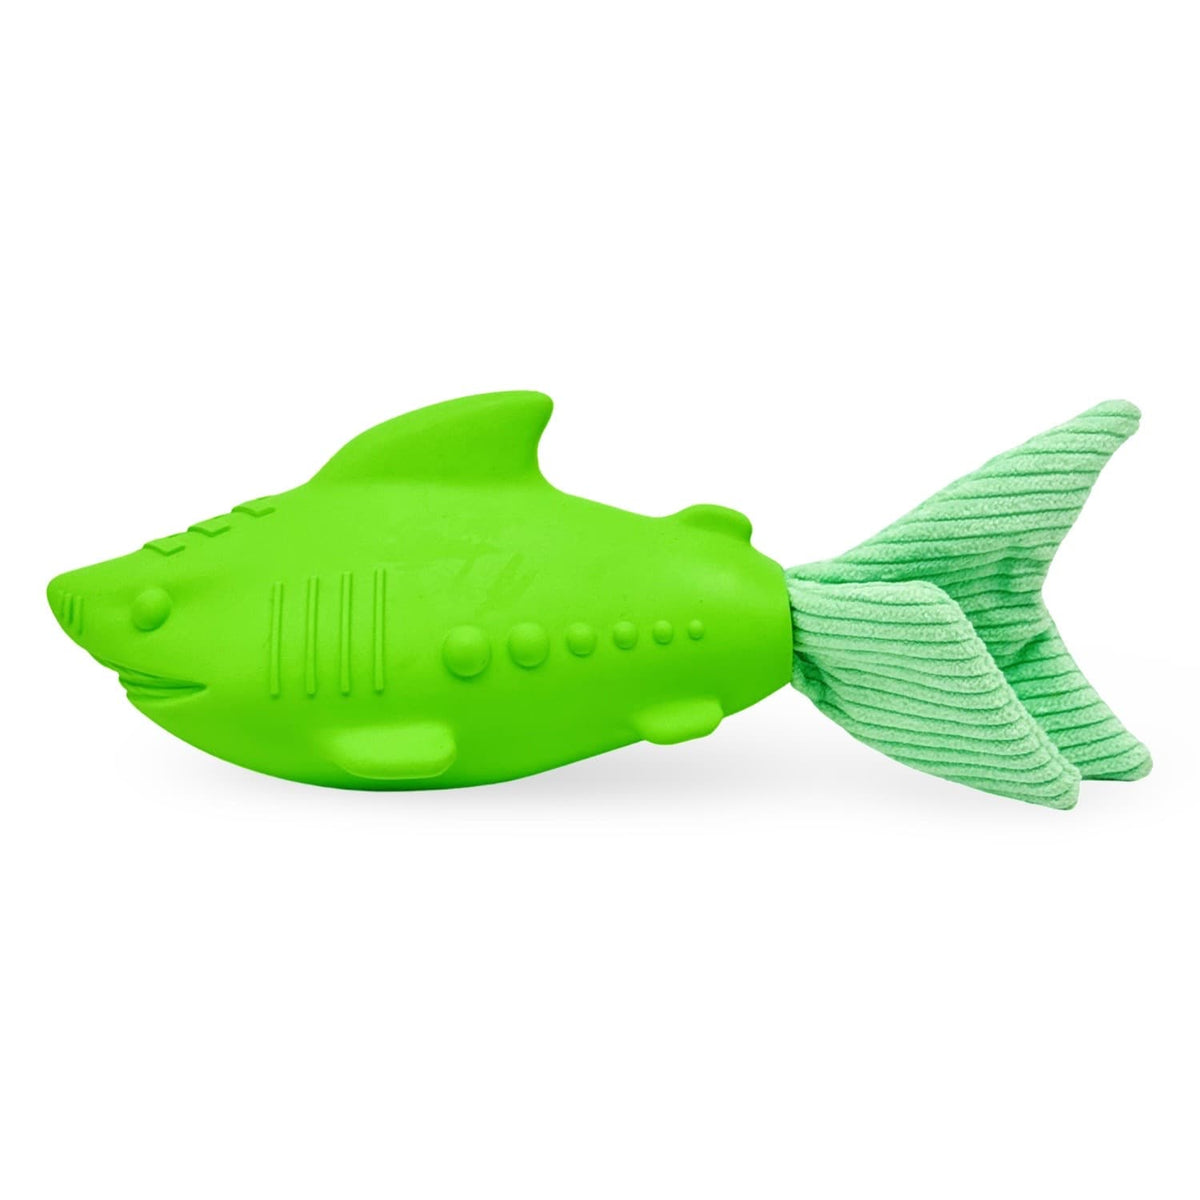 Vibrant Bright Green Squeaker Shark Dog Toy